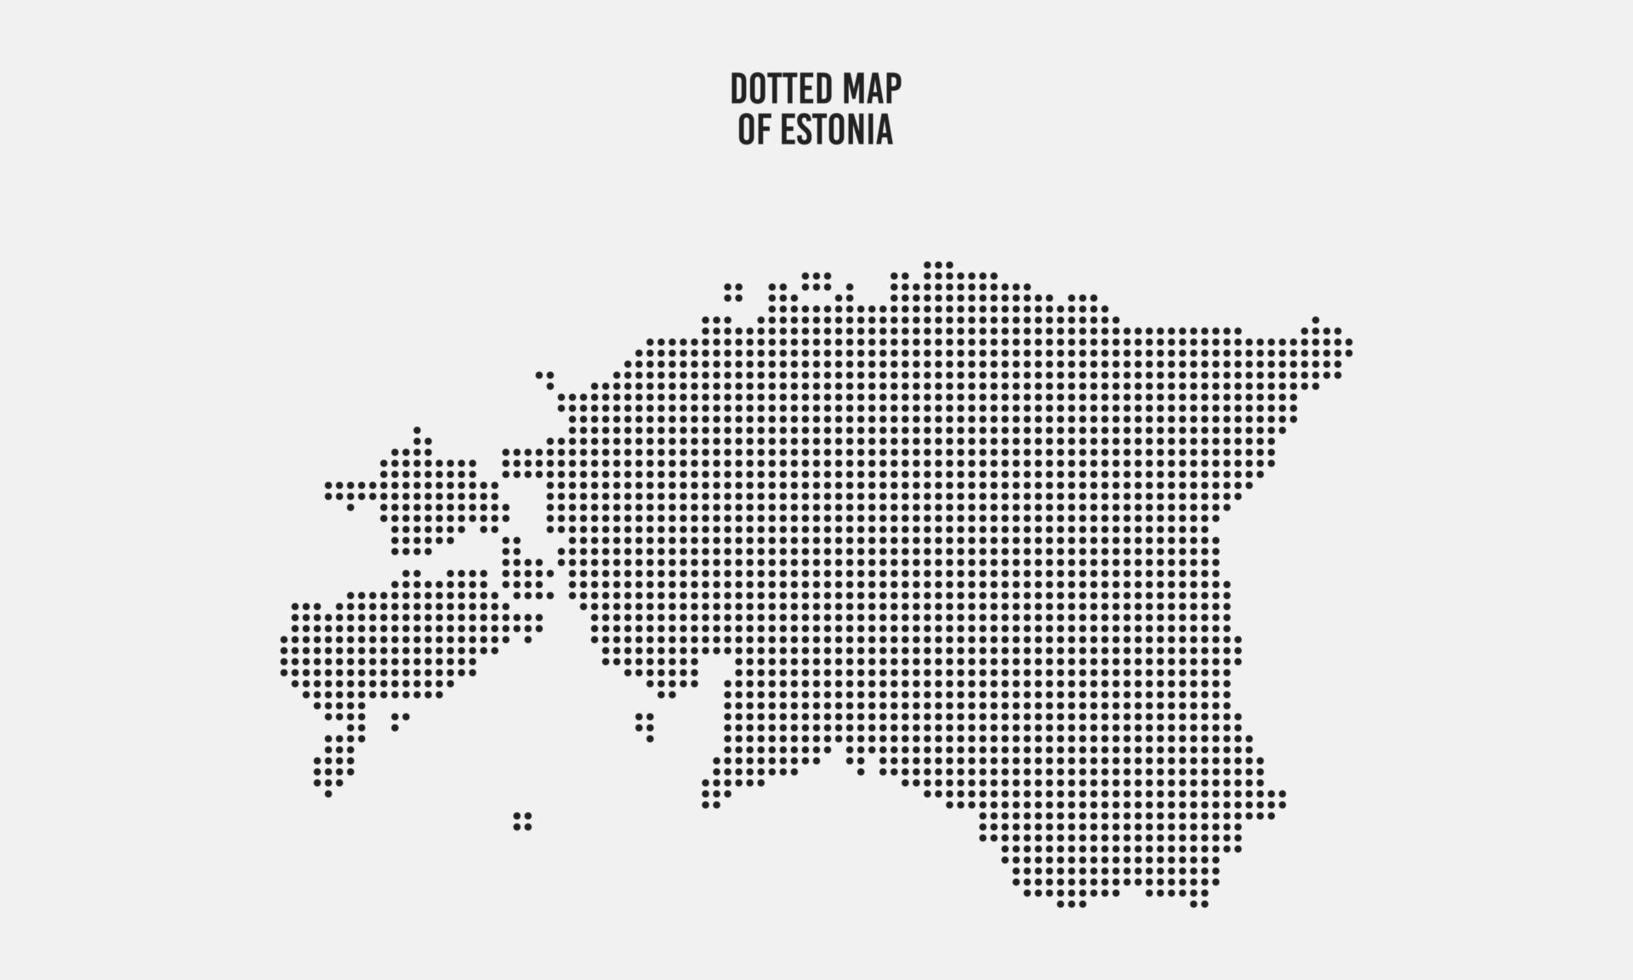 nero tratteggiata Estonia carta geografica vettore